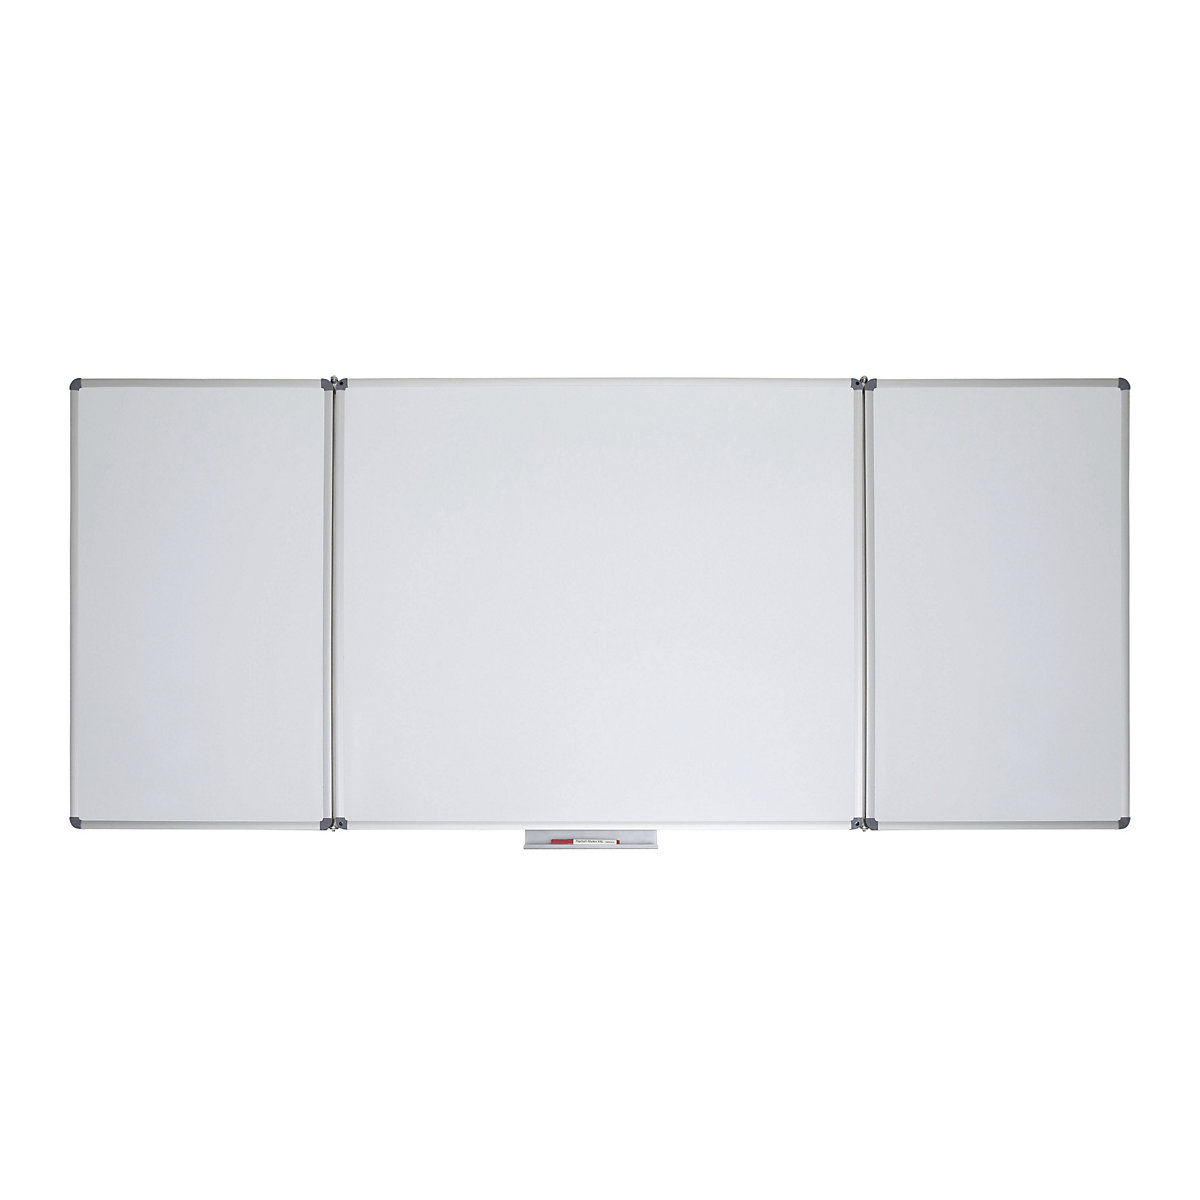 Whiteboard-Klapptafel MAUL, Stahlblech, beschichtet, BxH 1500 x 1000 mm-3